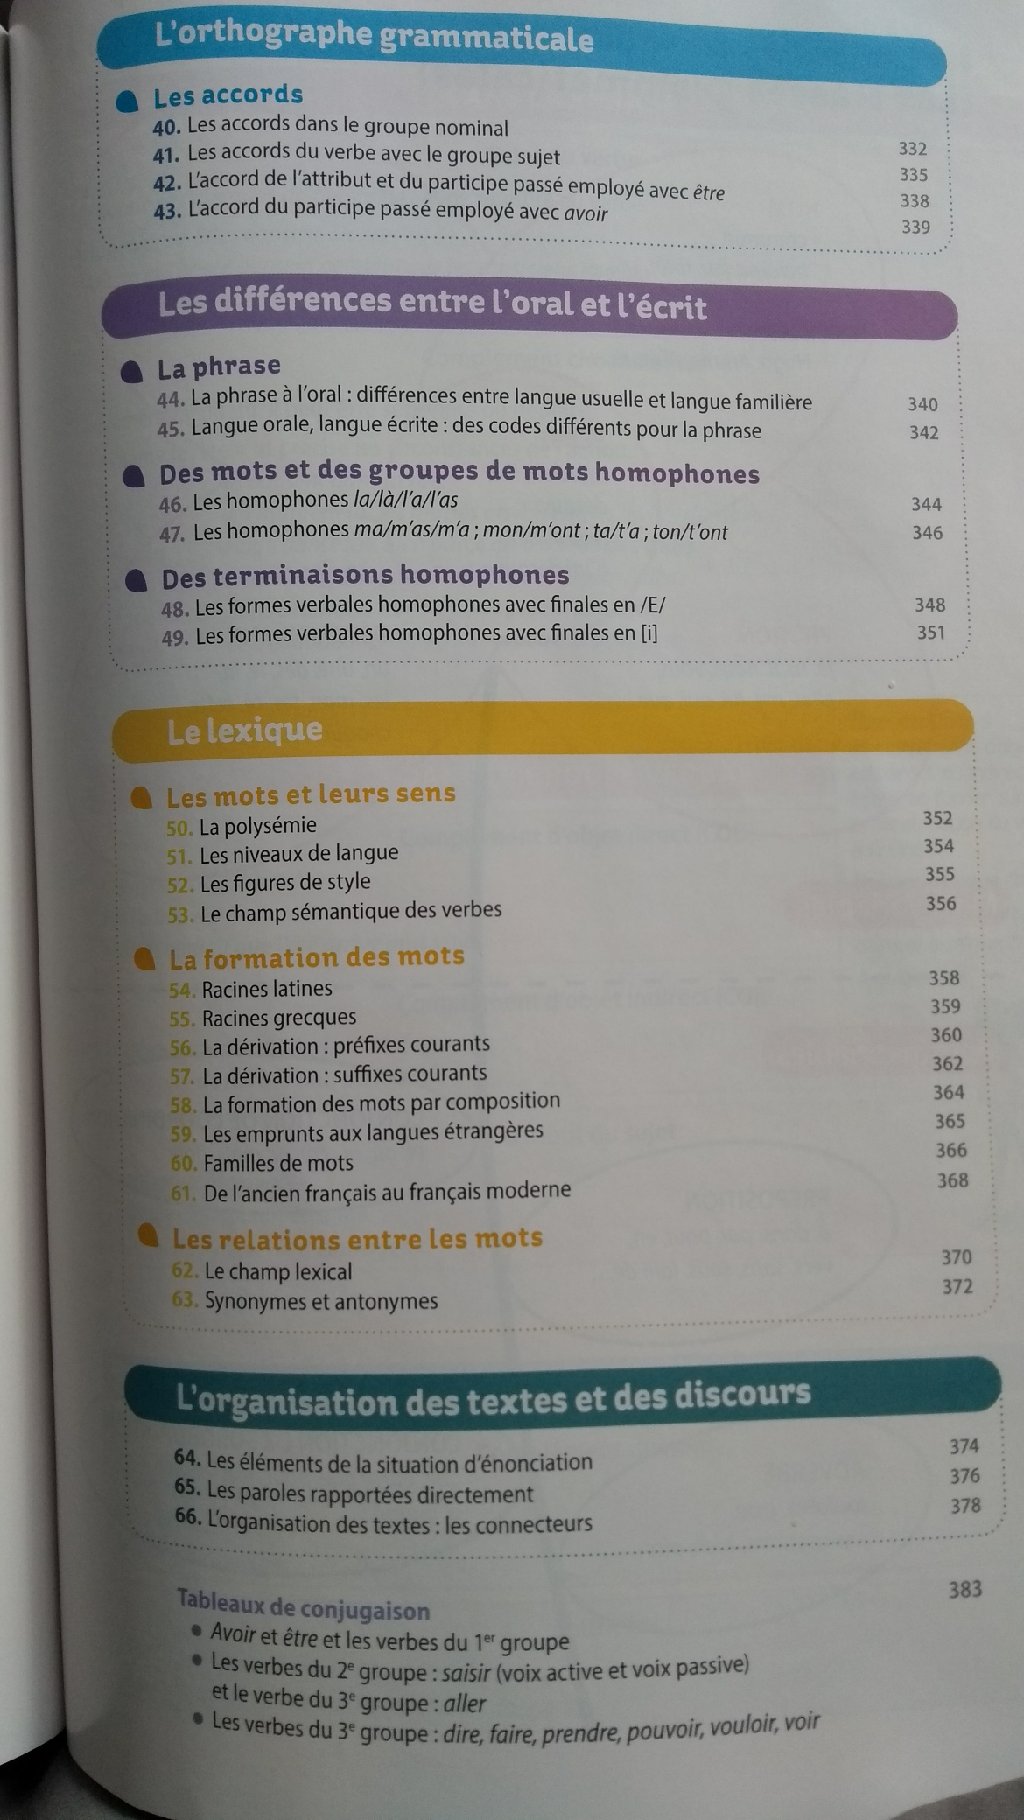 Nouveau manuel Terre des Lettres 5e? - Page 4 Image412